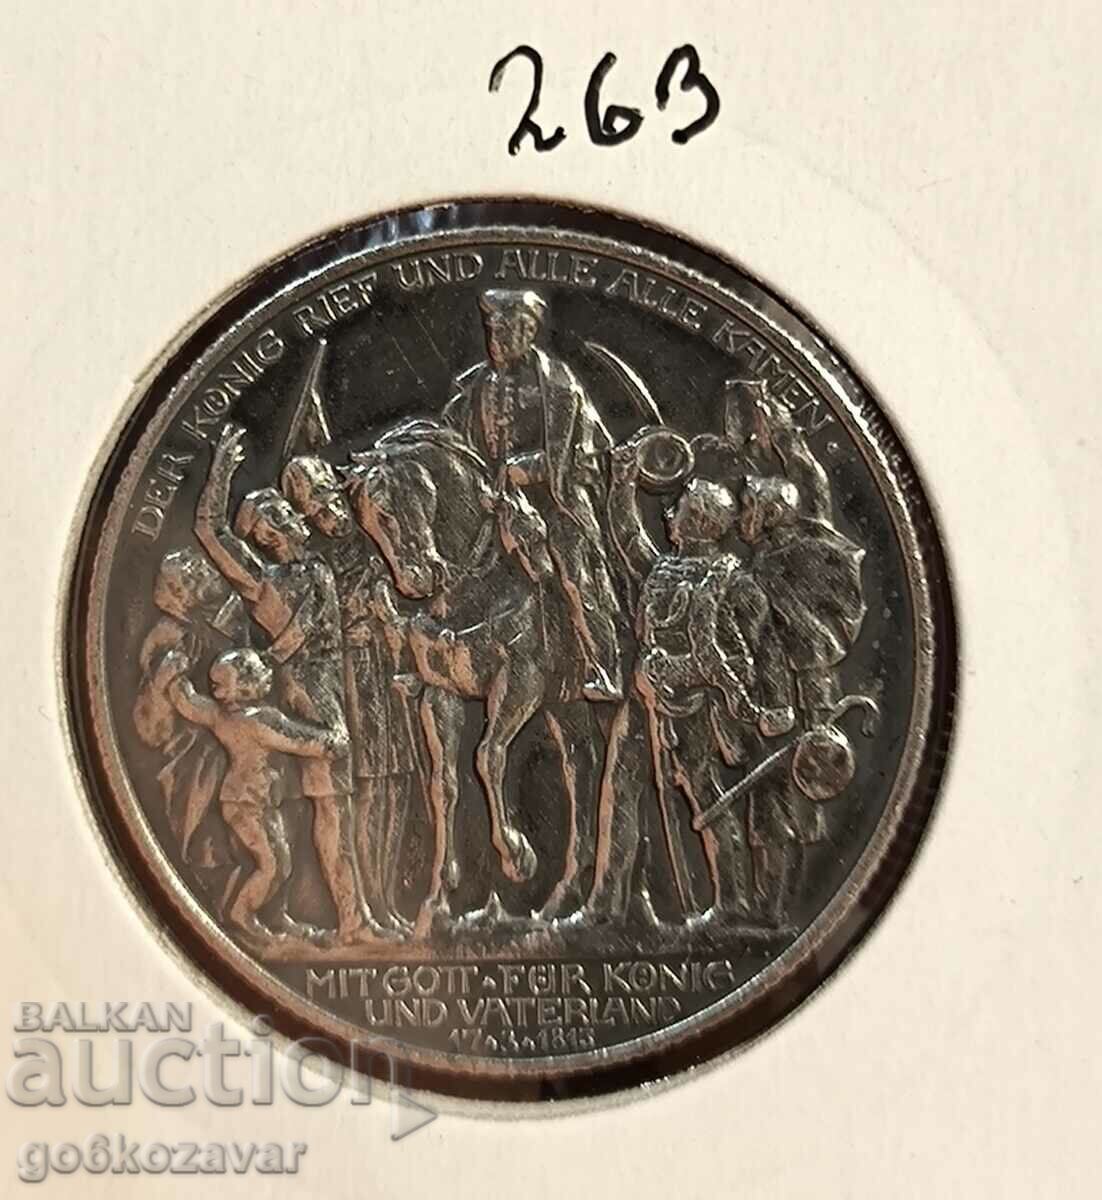 Γερμανία Πρωσία 2 γραμματόσημα 1913 Ασήμι!